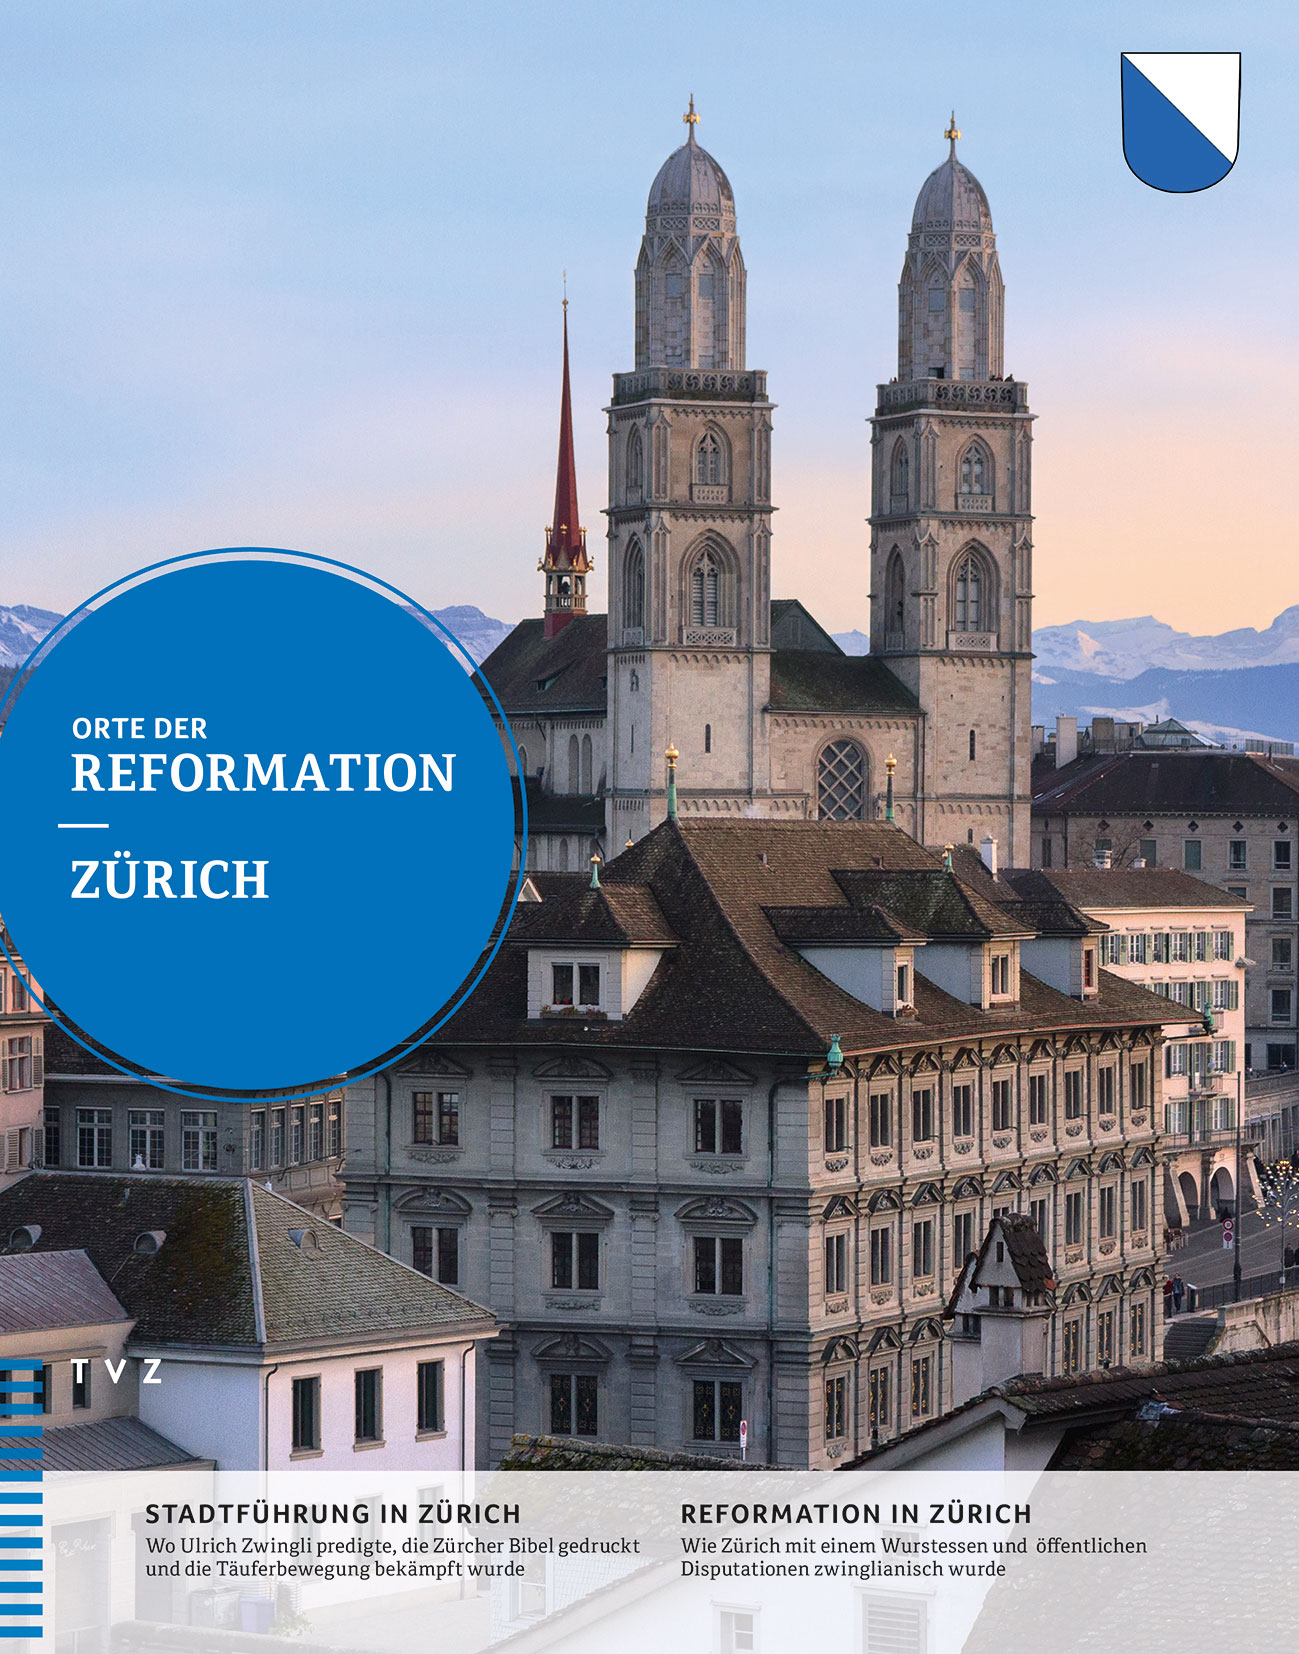 “Orte der Reformation: Zürich” by Käthi Koenig and Peter Opitz, Zurich 2016, call number: DW 22837